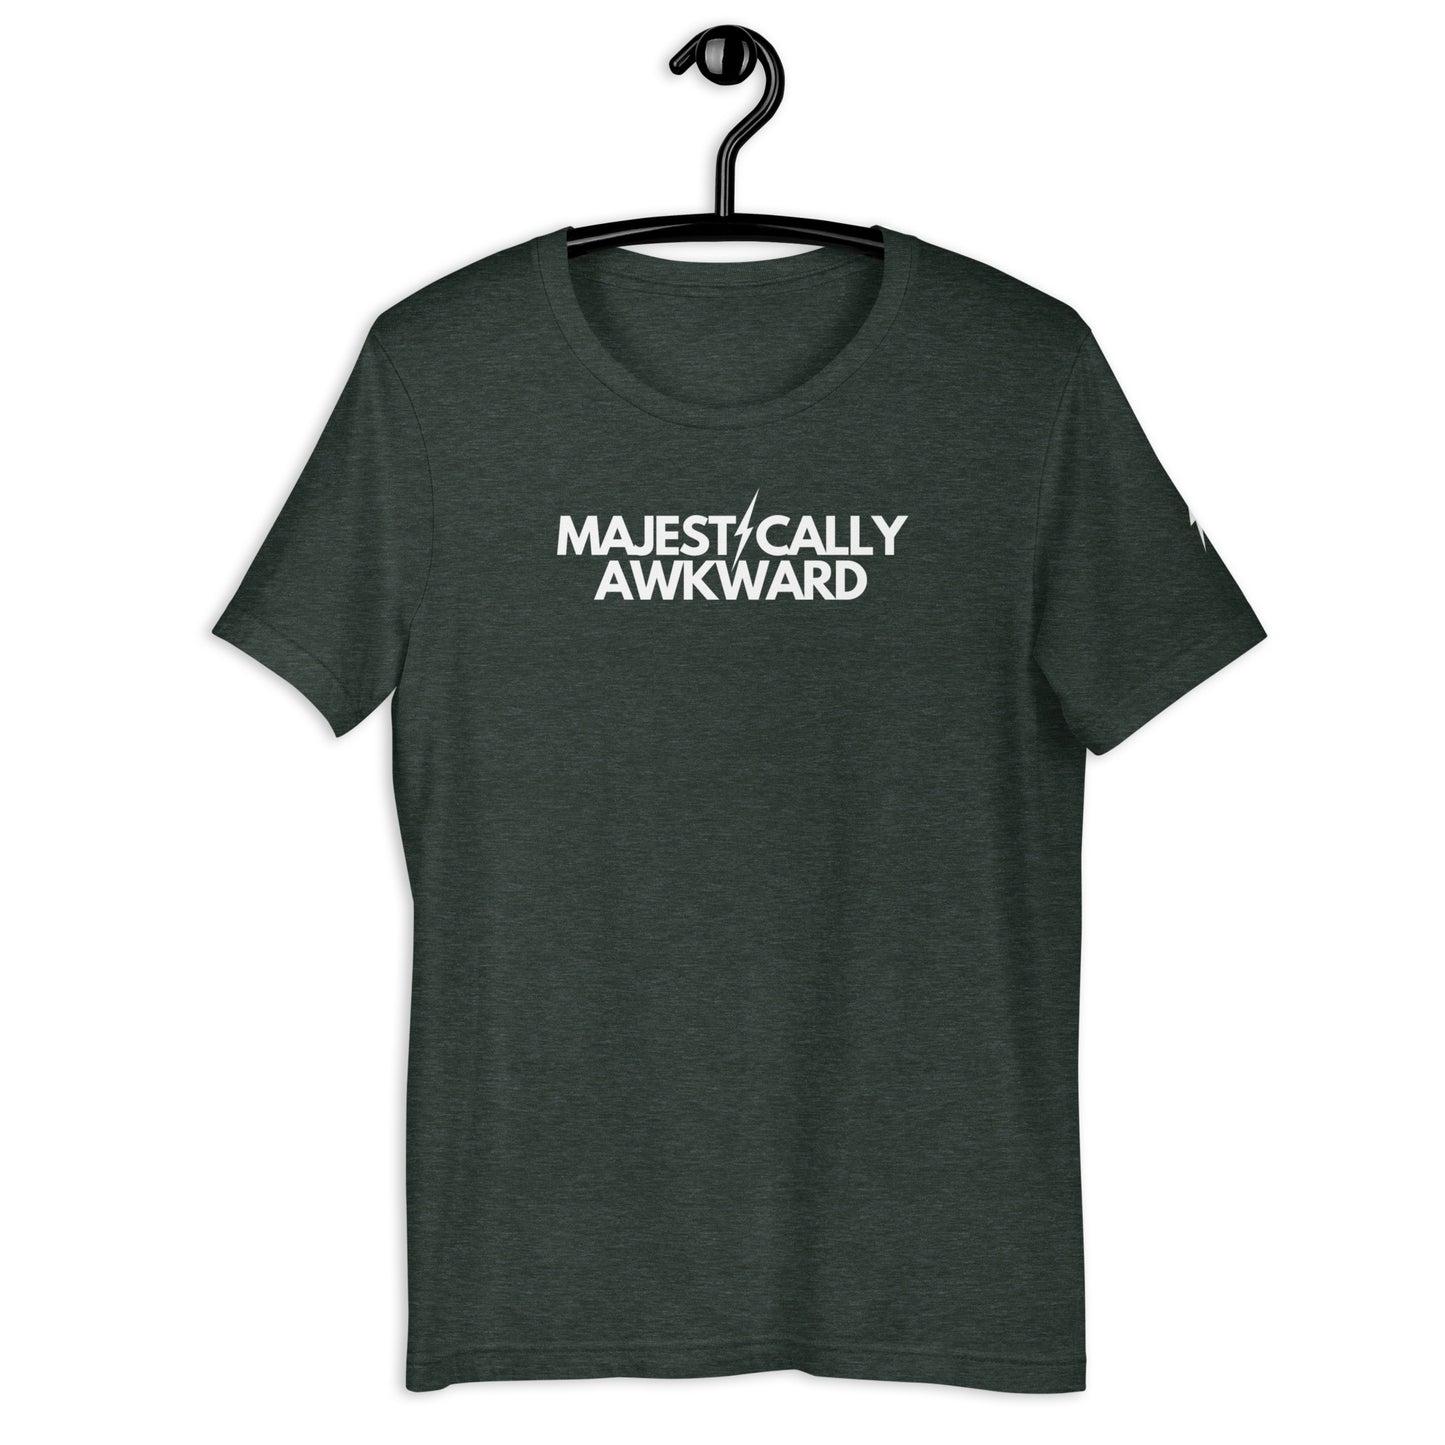 Majestically Awkward t-shirt